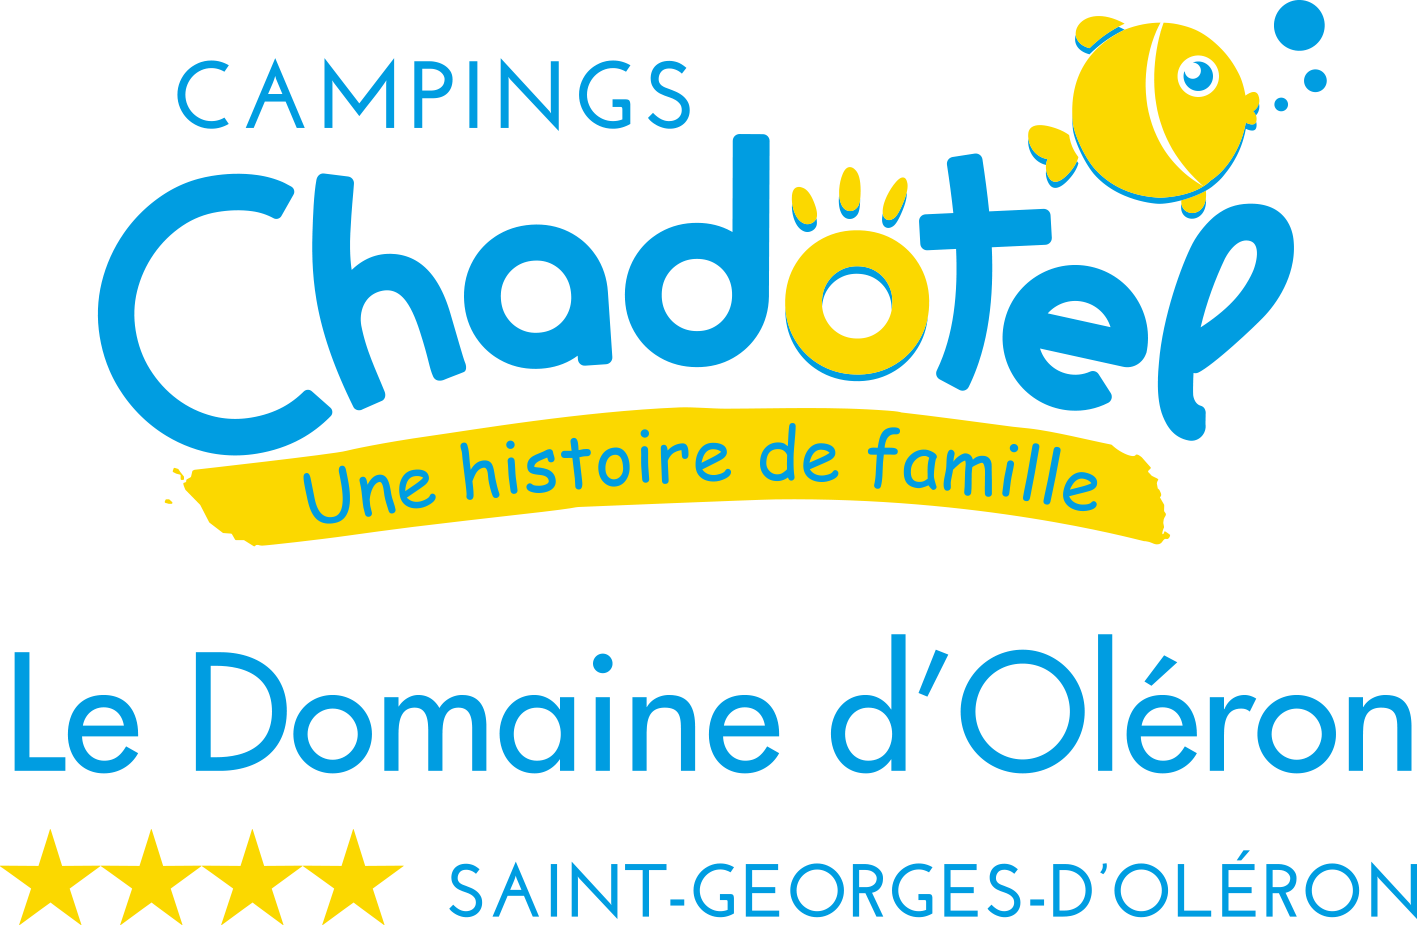 Owner Chadotel Le Domaine D'oléron - Saint Georges D'oléron